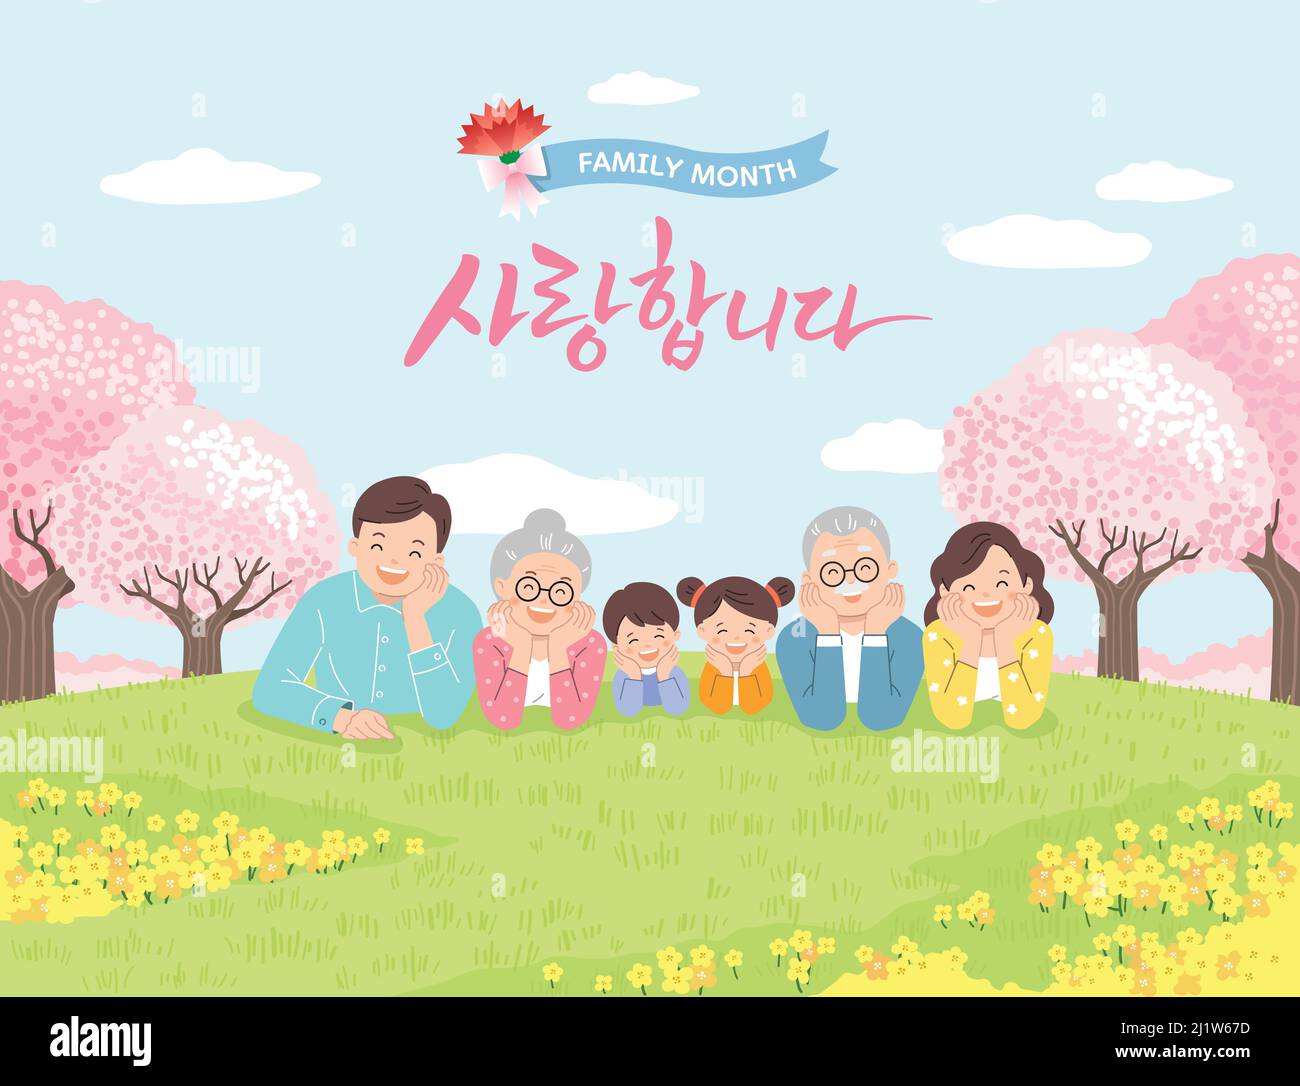 Familienmonat, glückliche Familie auf dem Rasen im Park an einem Frühlingstag. Ich liebe dich, koreanische Übersetzung. Stock Vektor